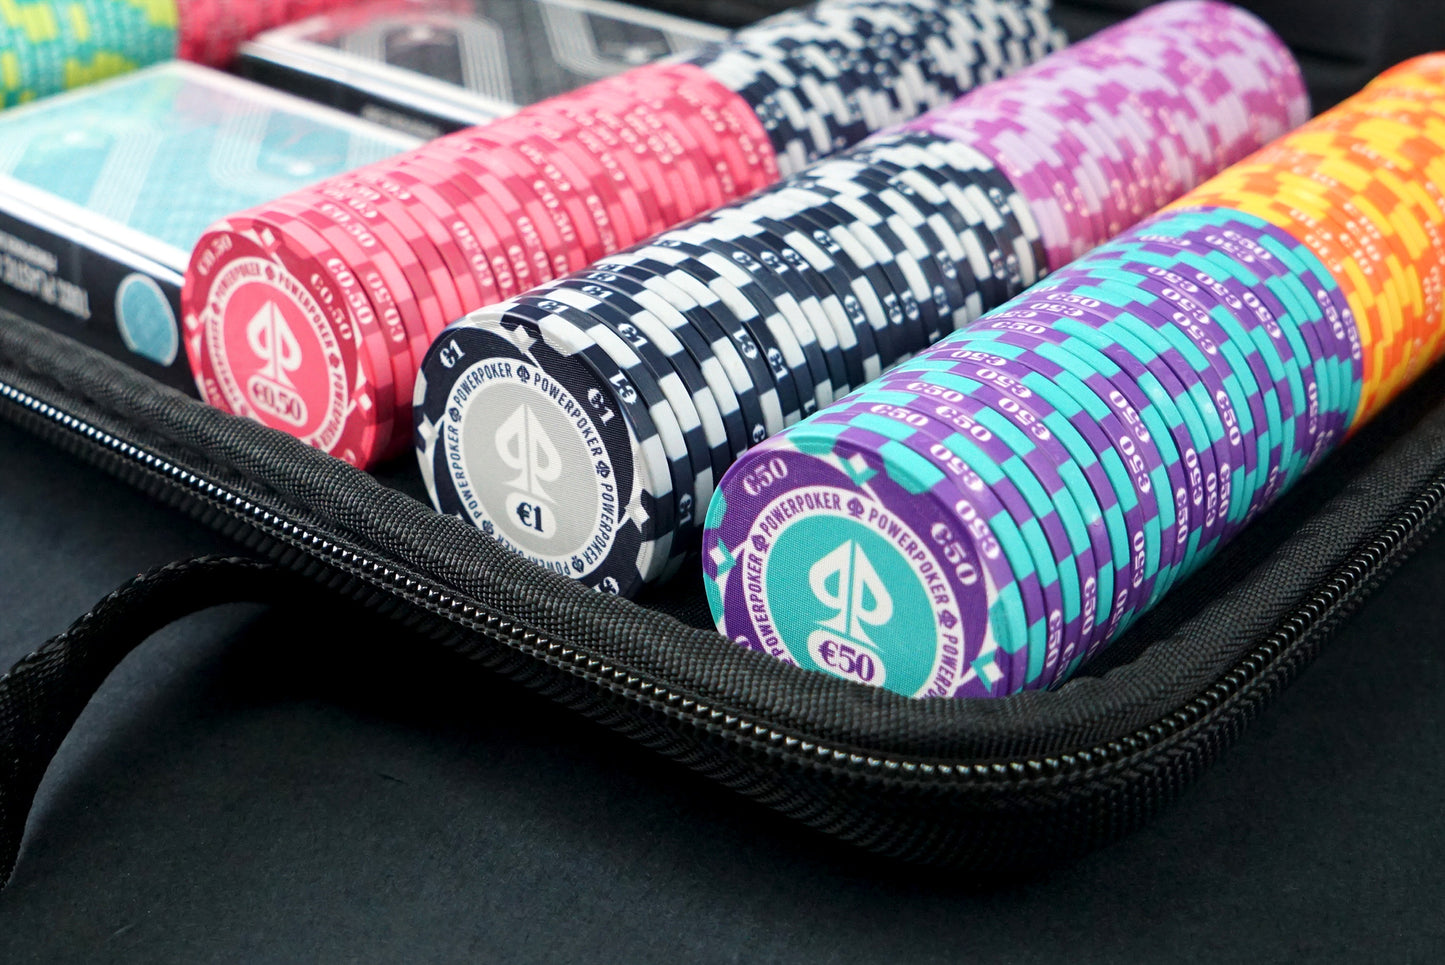 Pokerkoffer Komplett Set - "Hurricane Edition" CASH 300